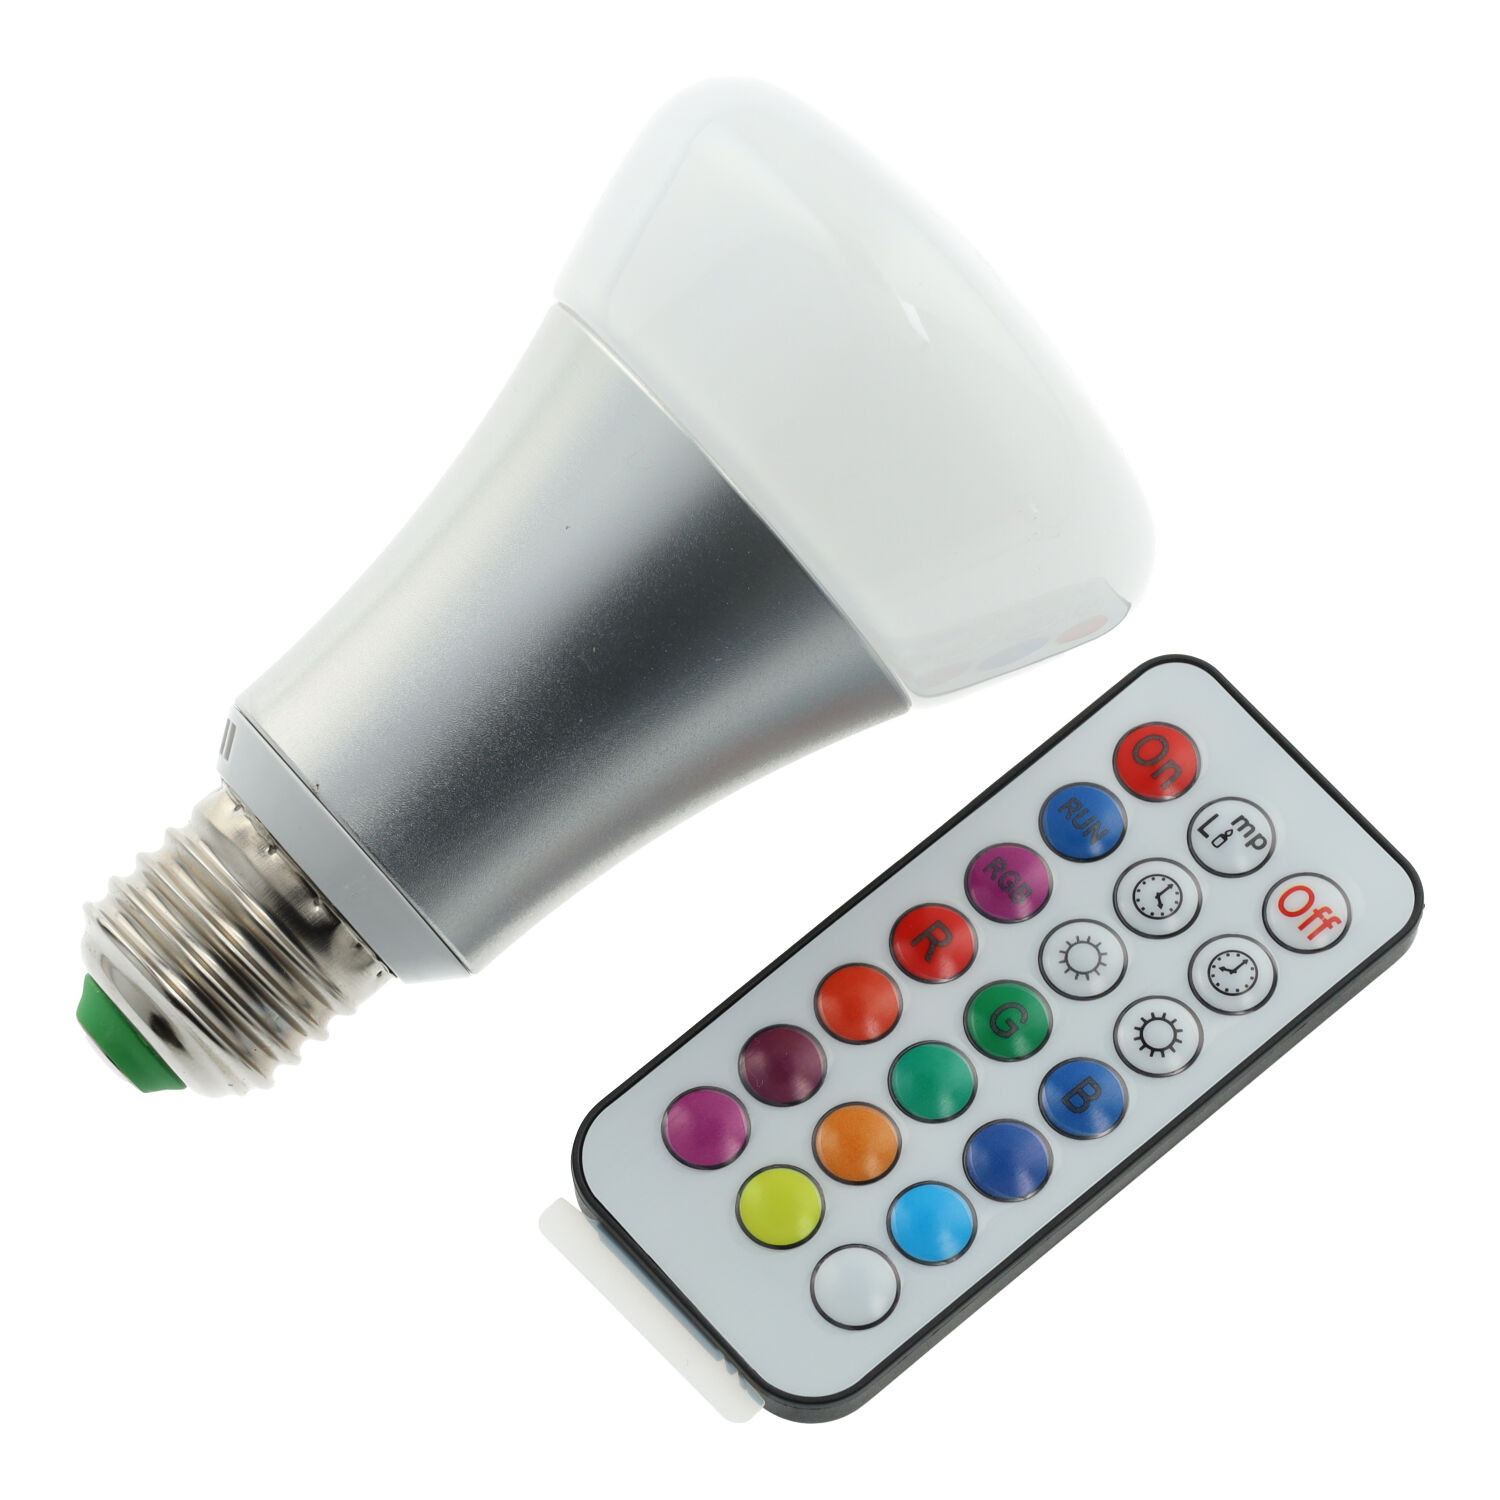 Ampoule LED RGBW de 10W